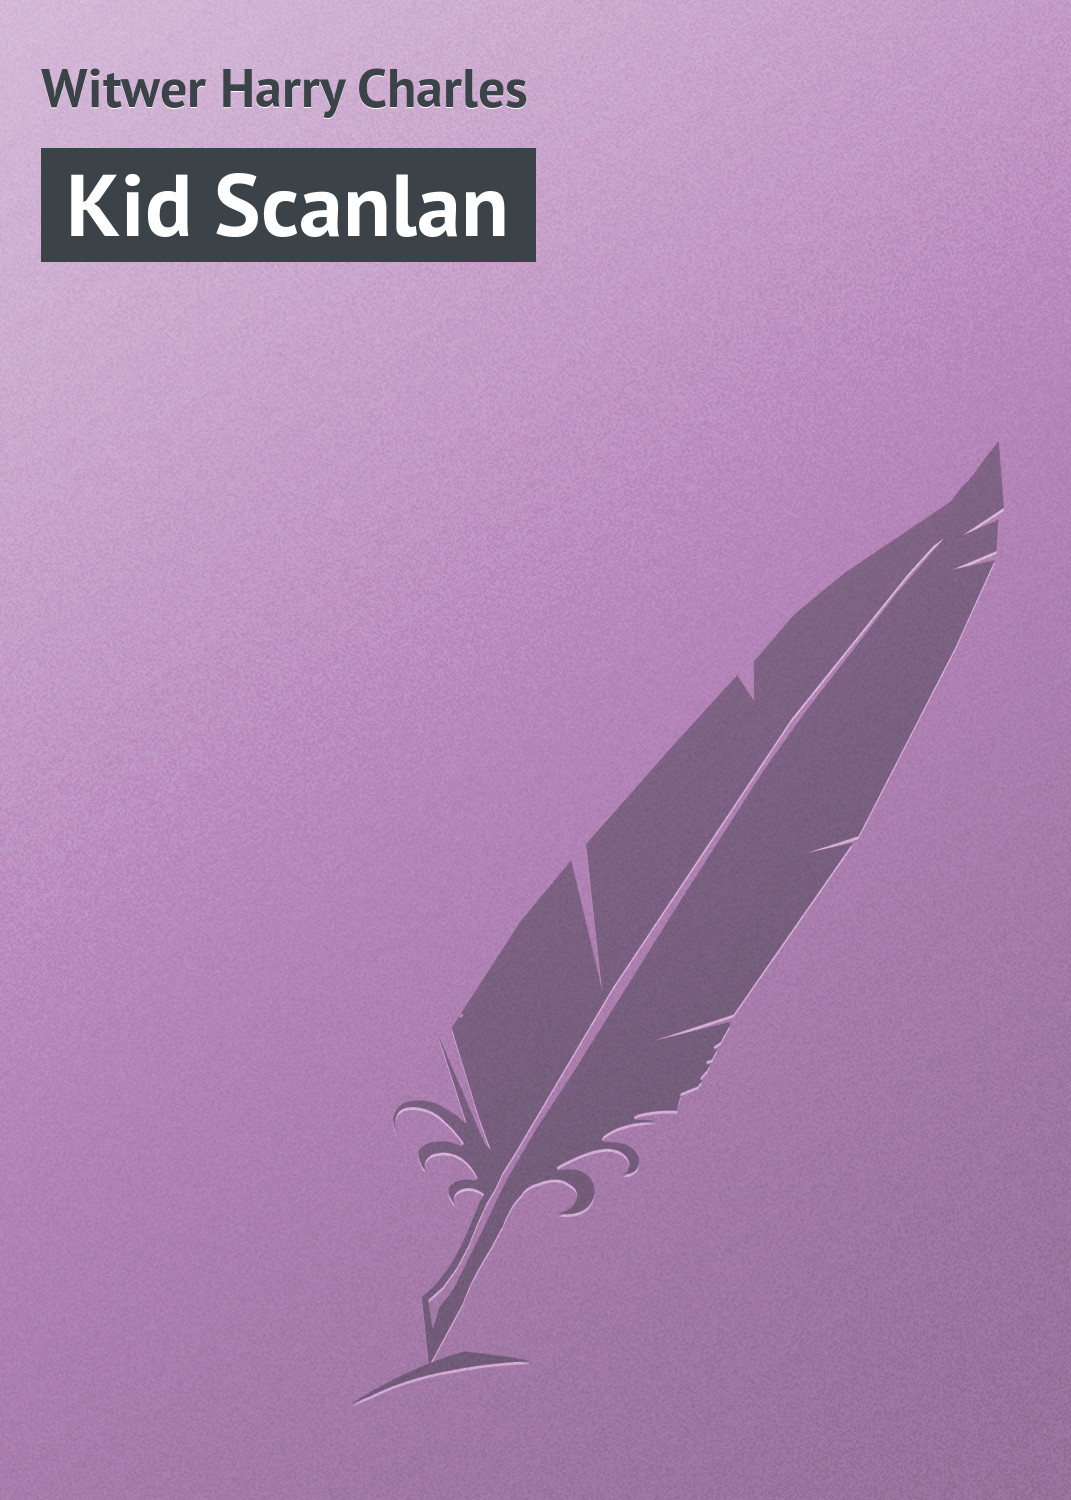 Книга Kid Scanlan из серии , созданная Harry Witwer, может относится к жанру Зарубежная классика, Зарубежный юмор. Стоимость электронной книги Kid Scanlan с идентификатором 23160467 составляет 5.99 руб.